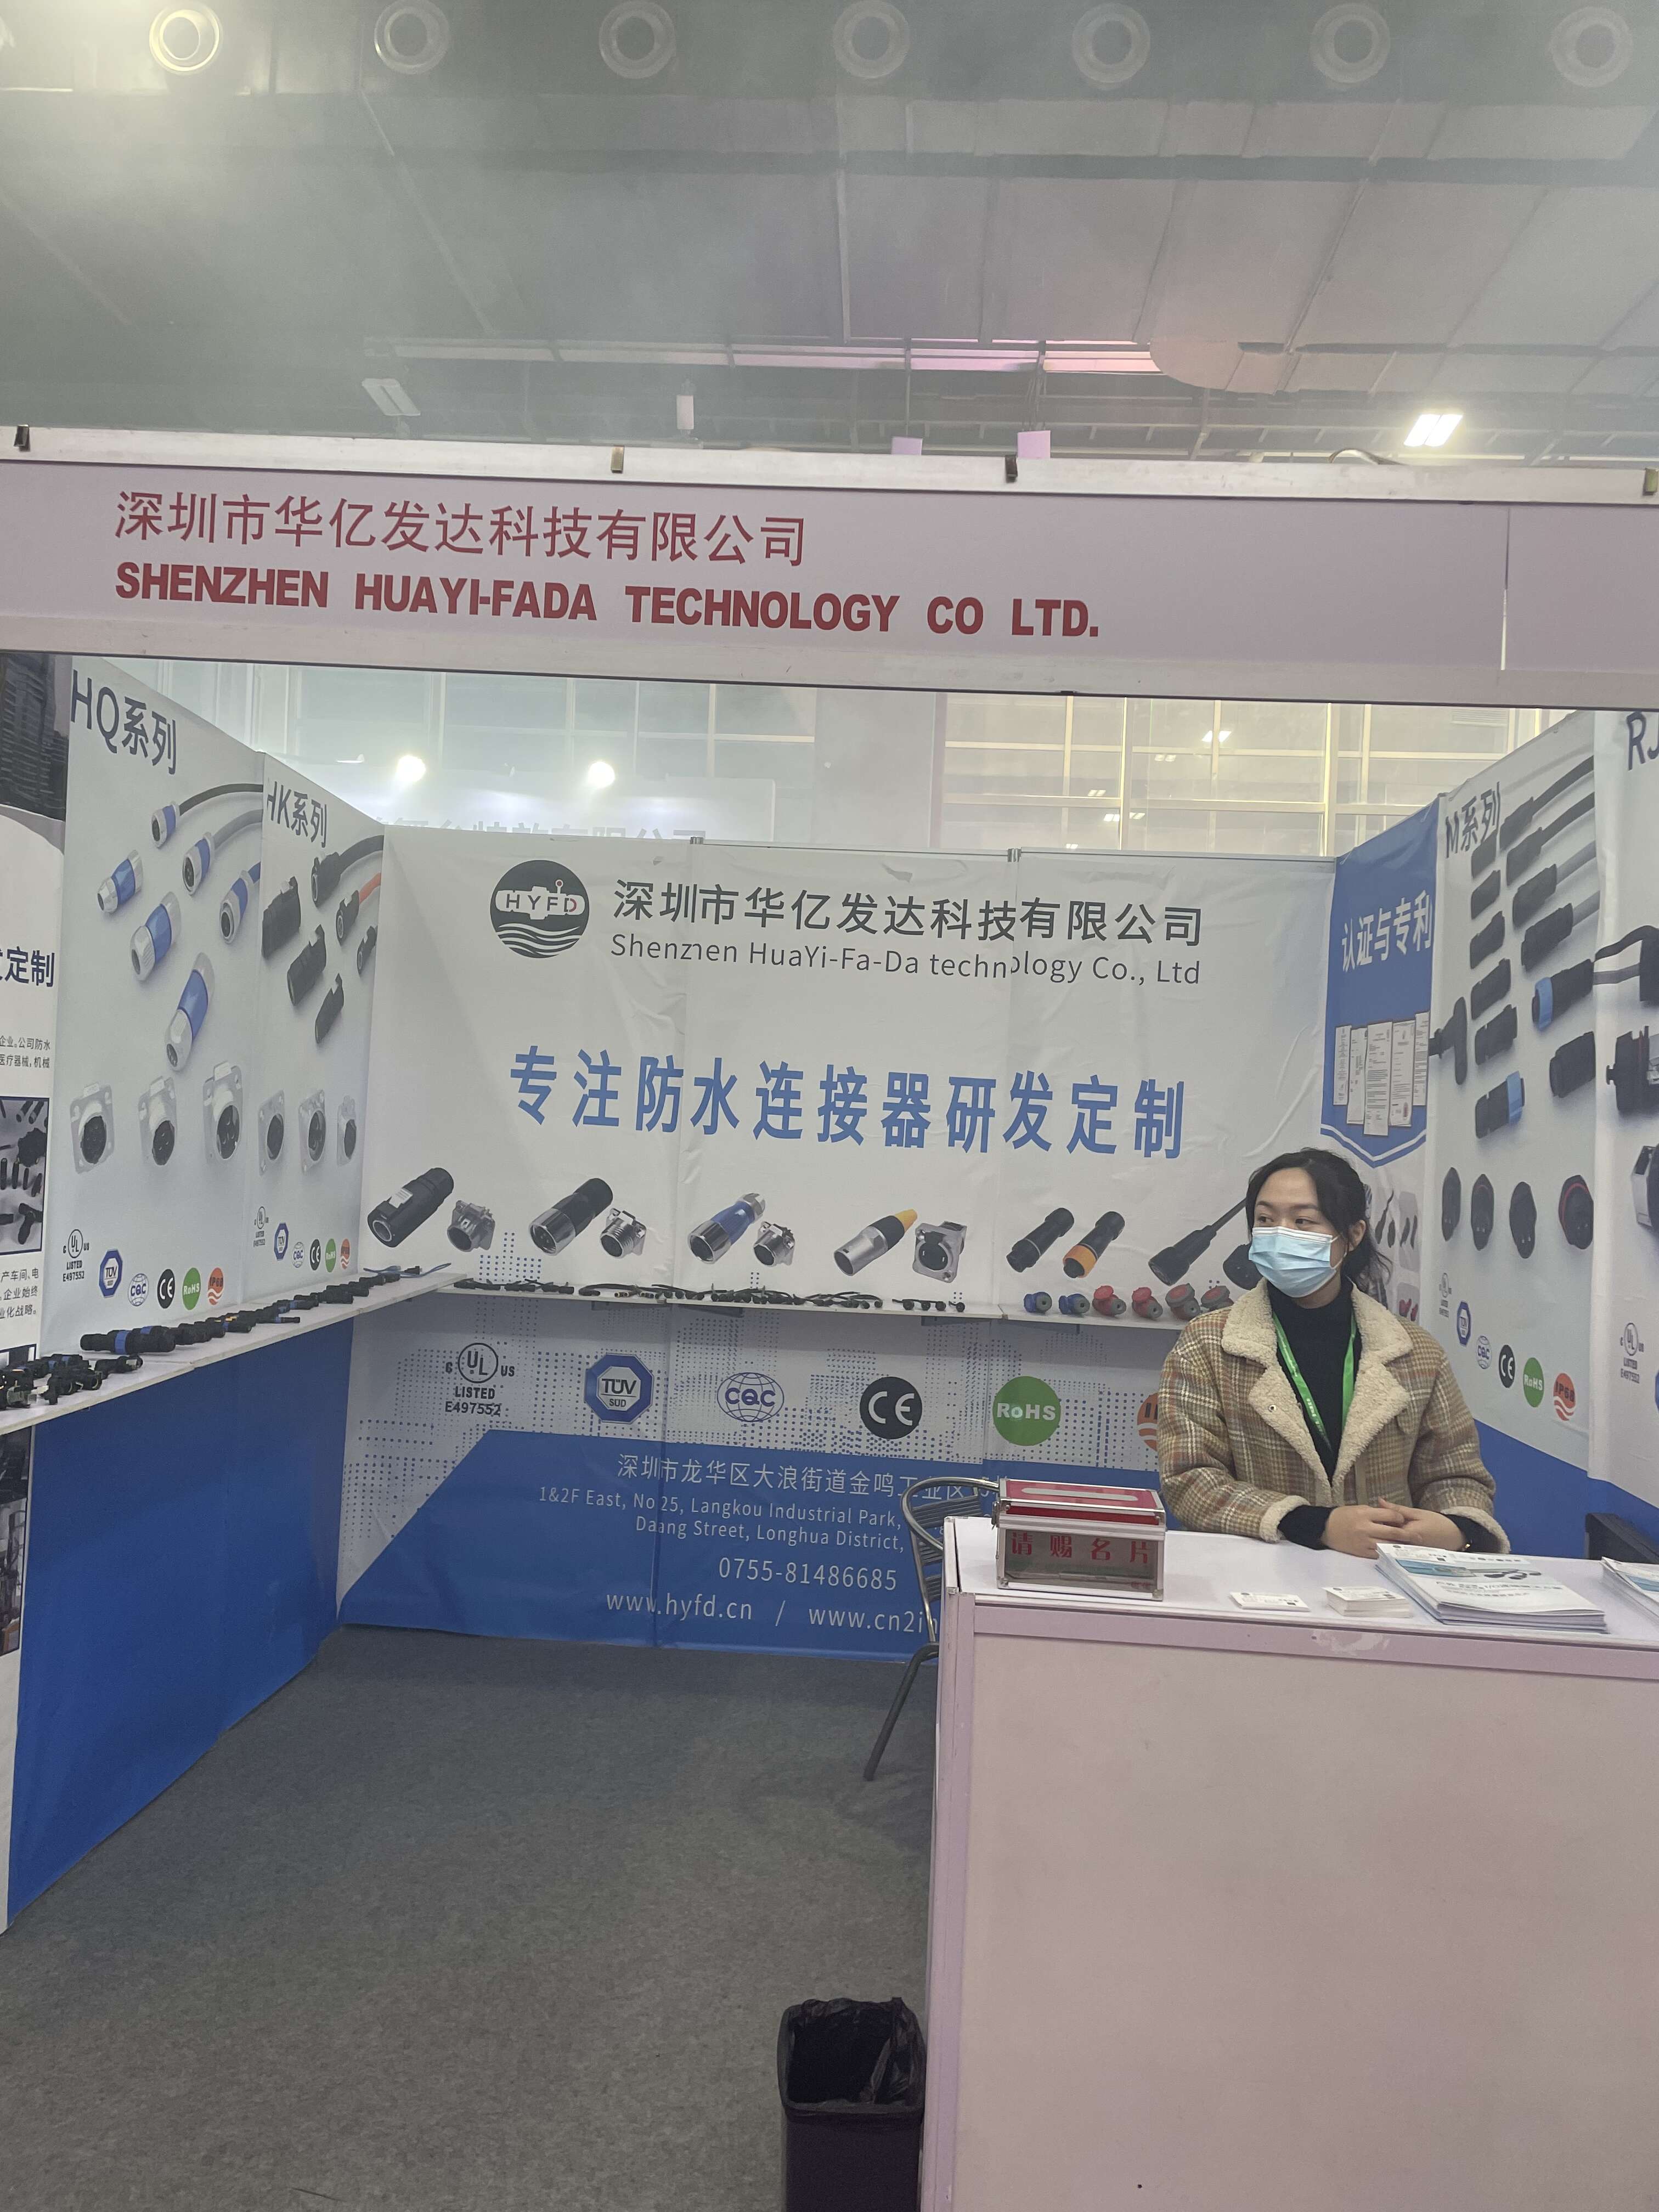 ShenZhen HuaYi-FaDa टेक्नोलोजी कं, लिमिटेडले प्रकाश मेलामा भाग लियो